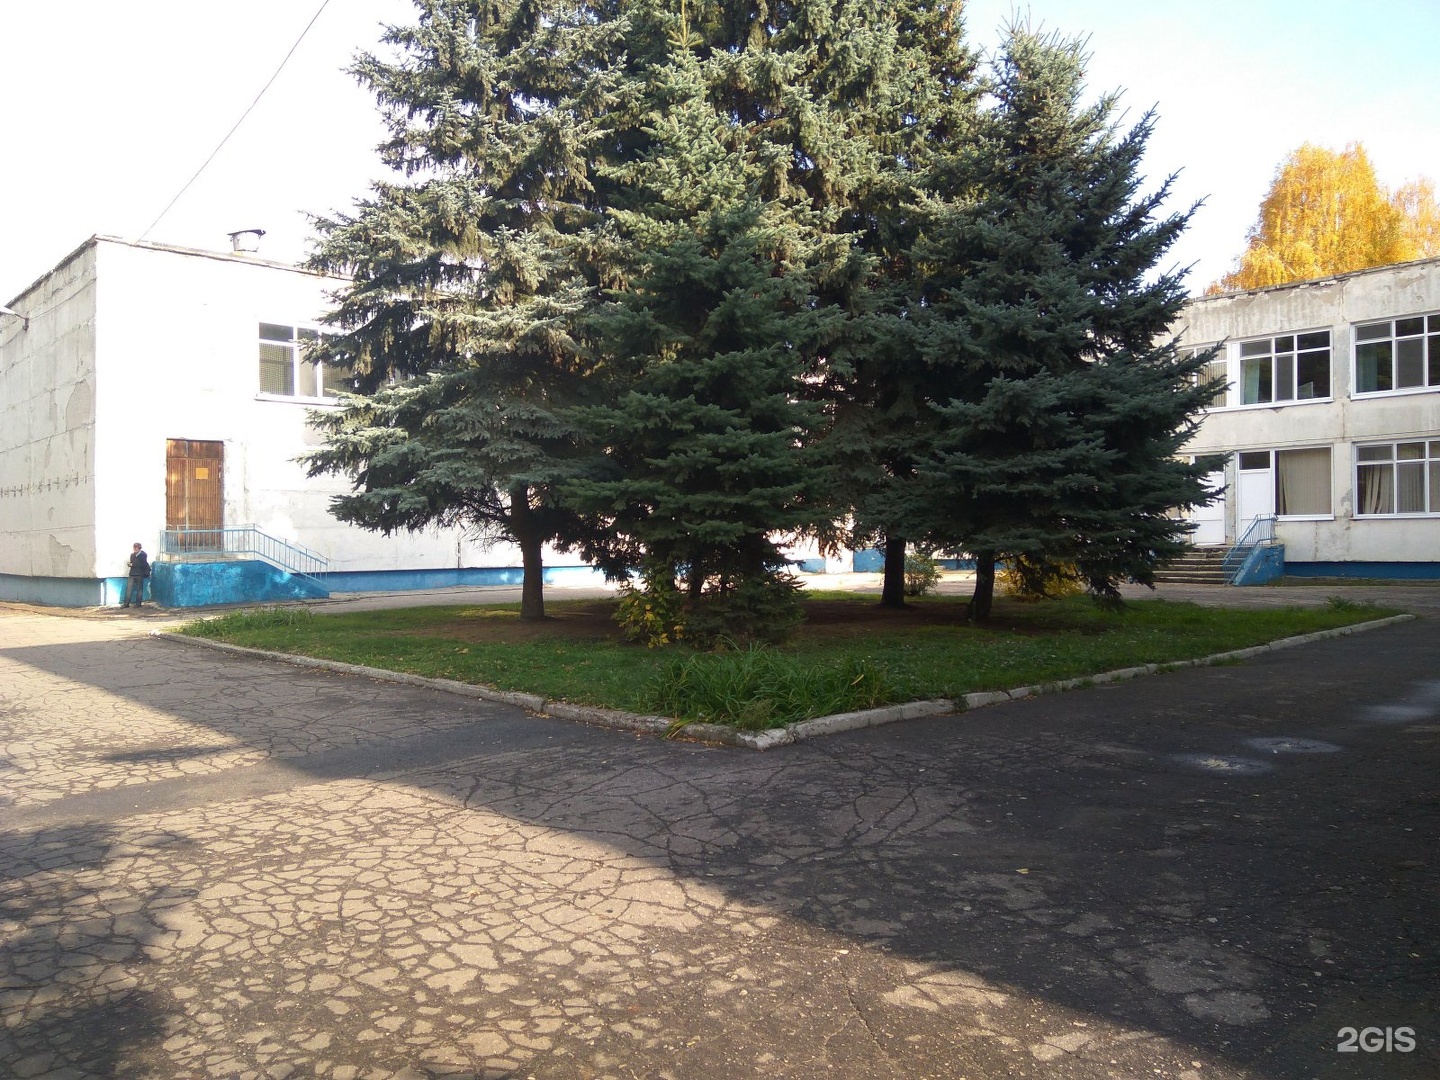 Школа 47 ульяновск